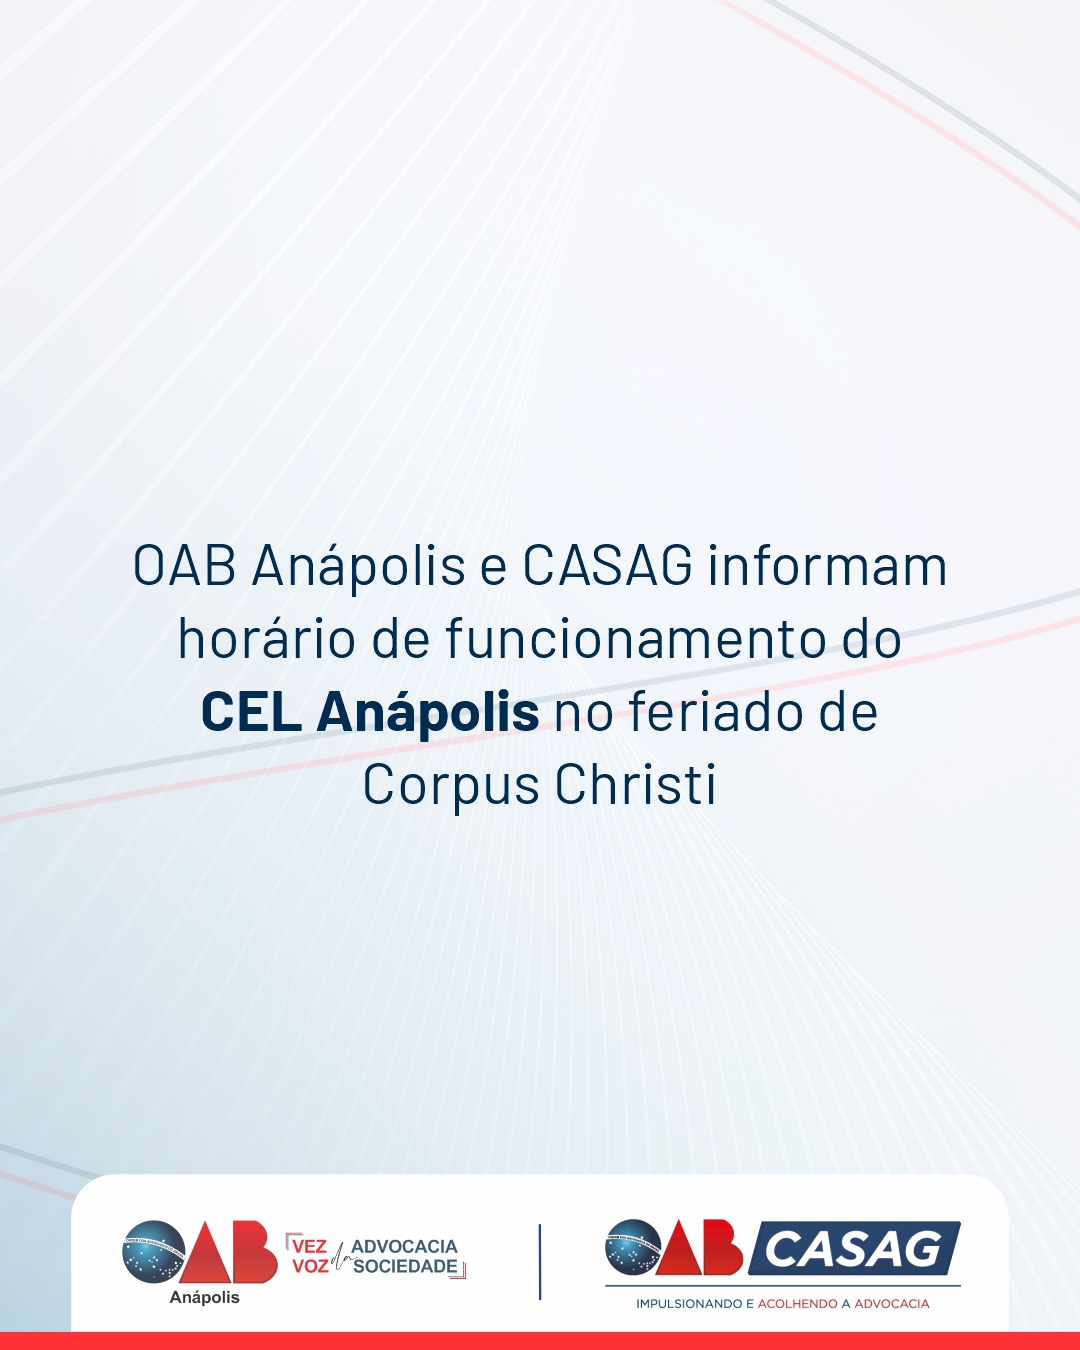 OAB Anápolis e CASAG informam horário de funcionamento do CEL Anápolis no feriado de Corpus Christi